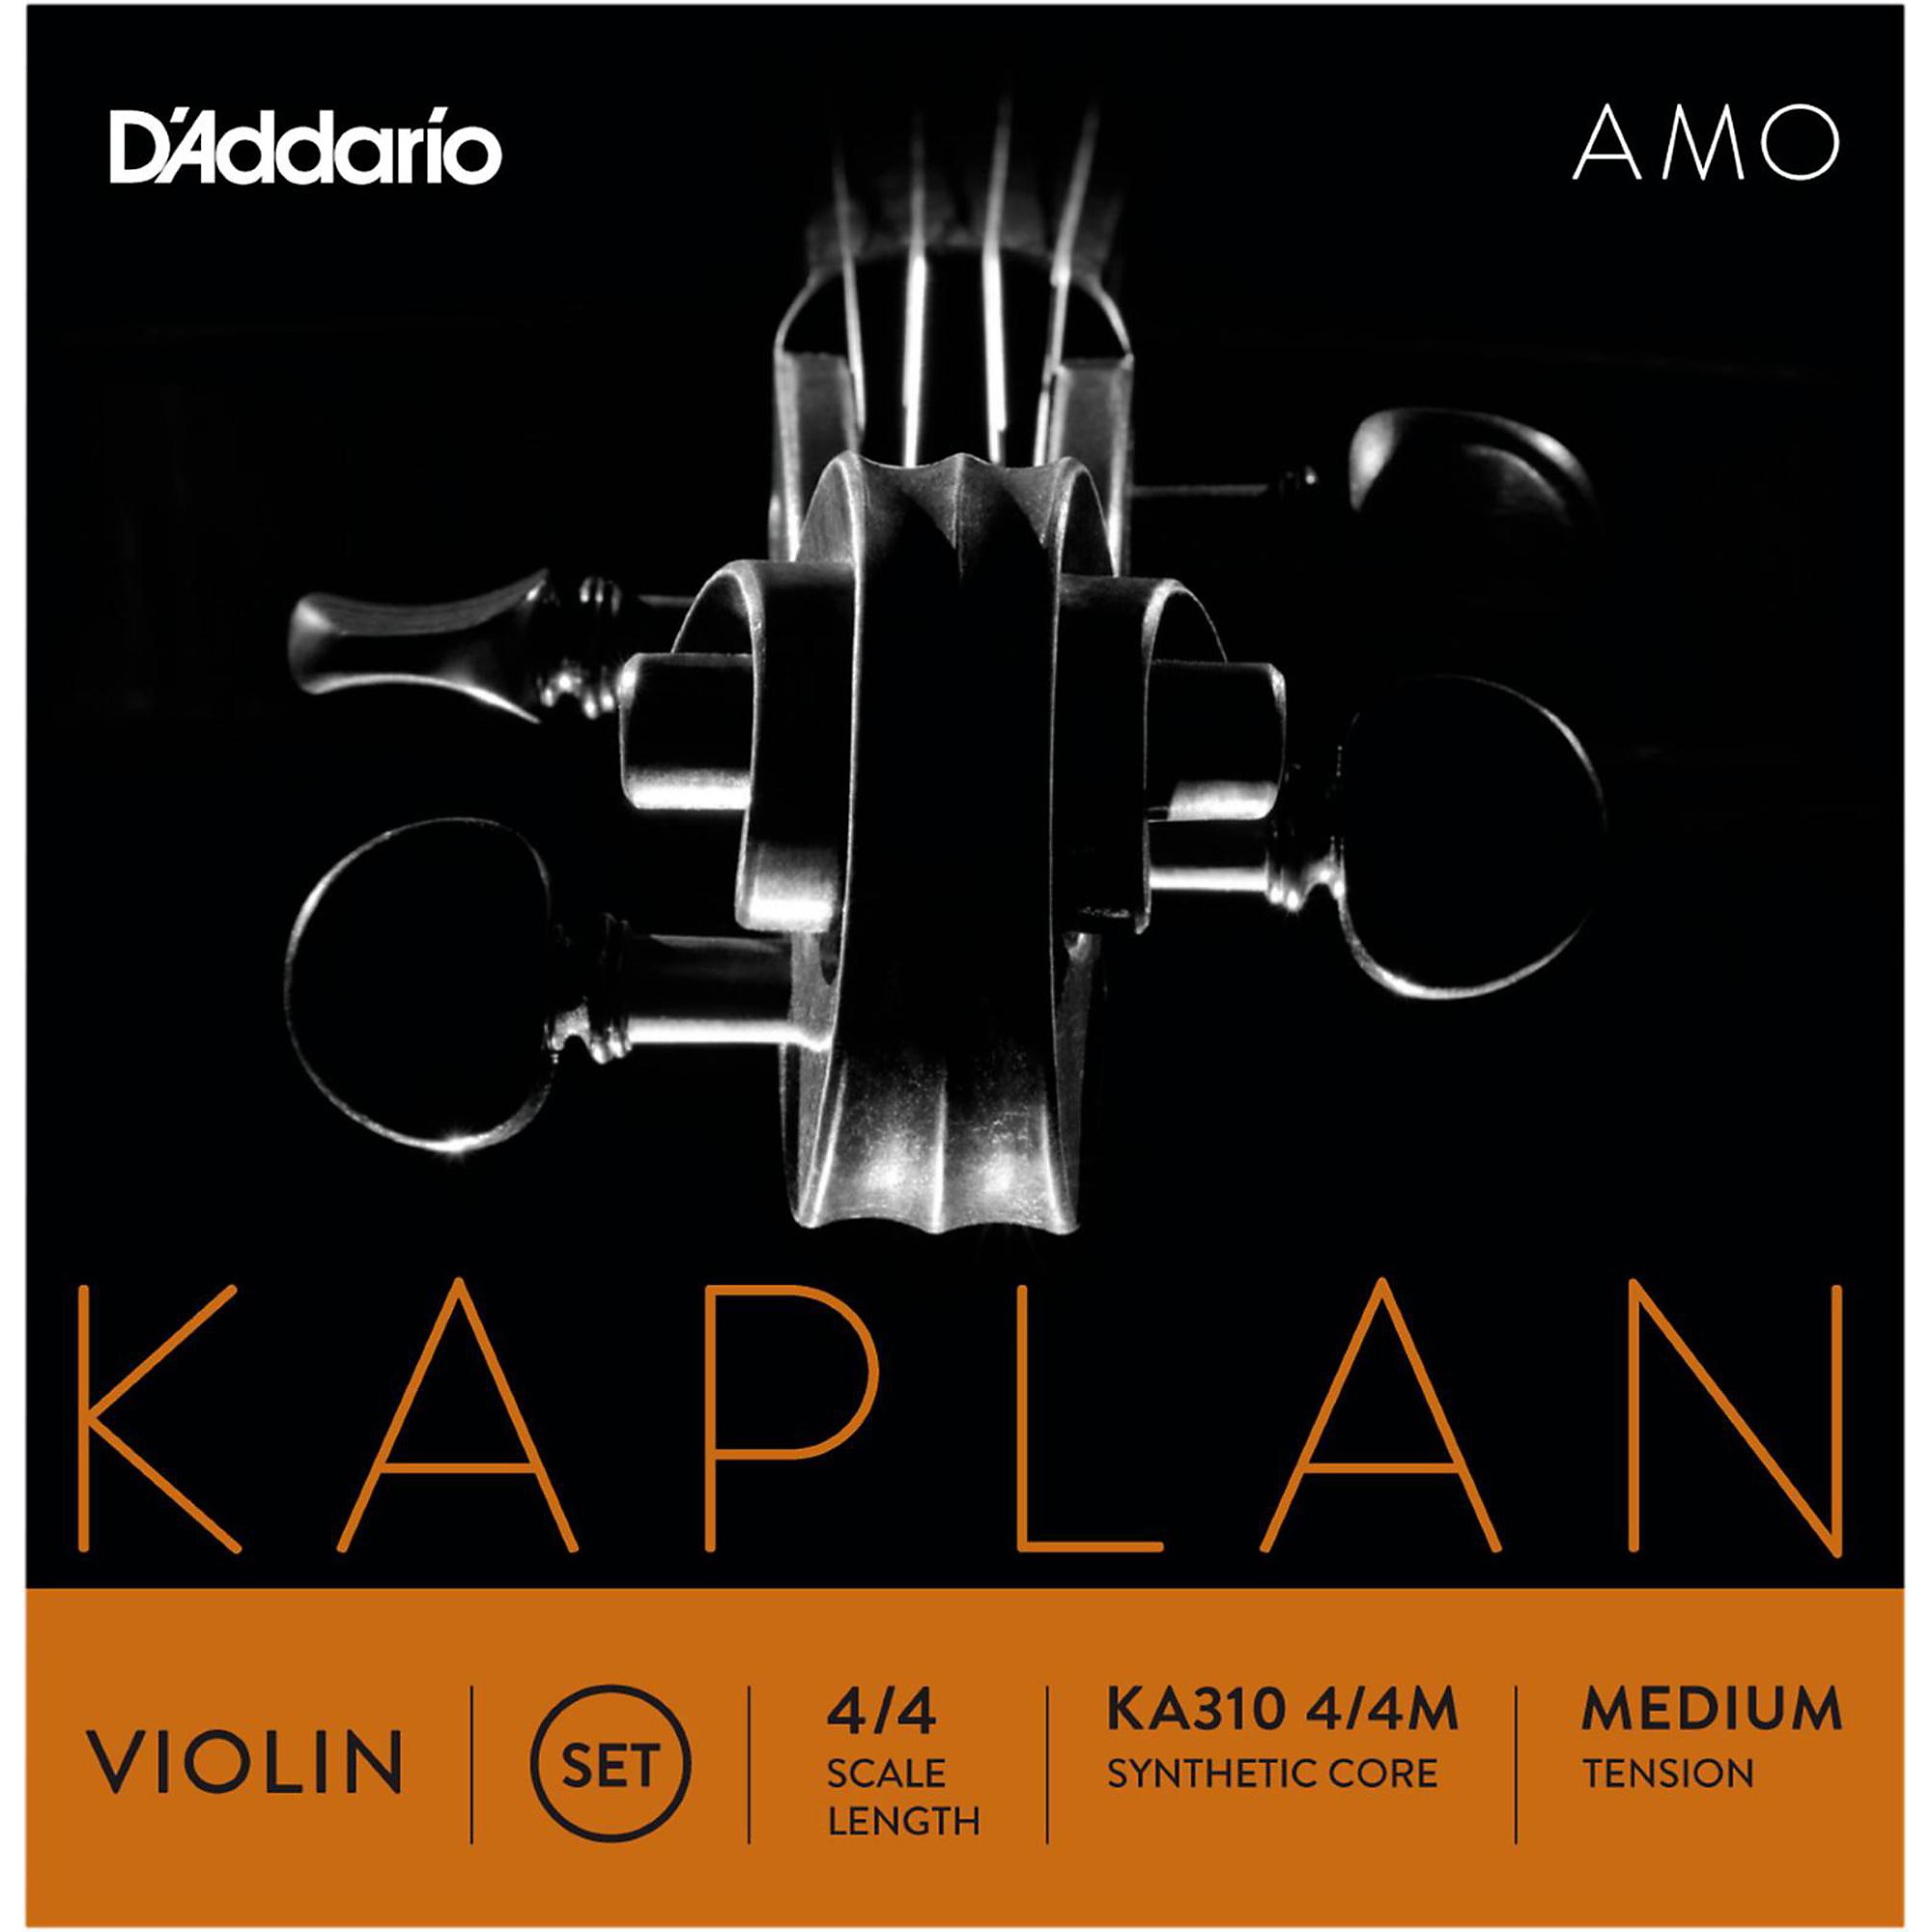 4/4 Scale DAddario Kaplan Cello String Set Medium Tension 